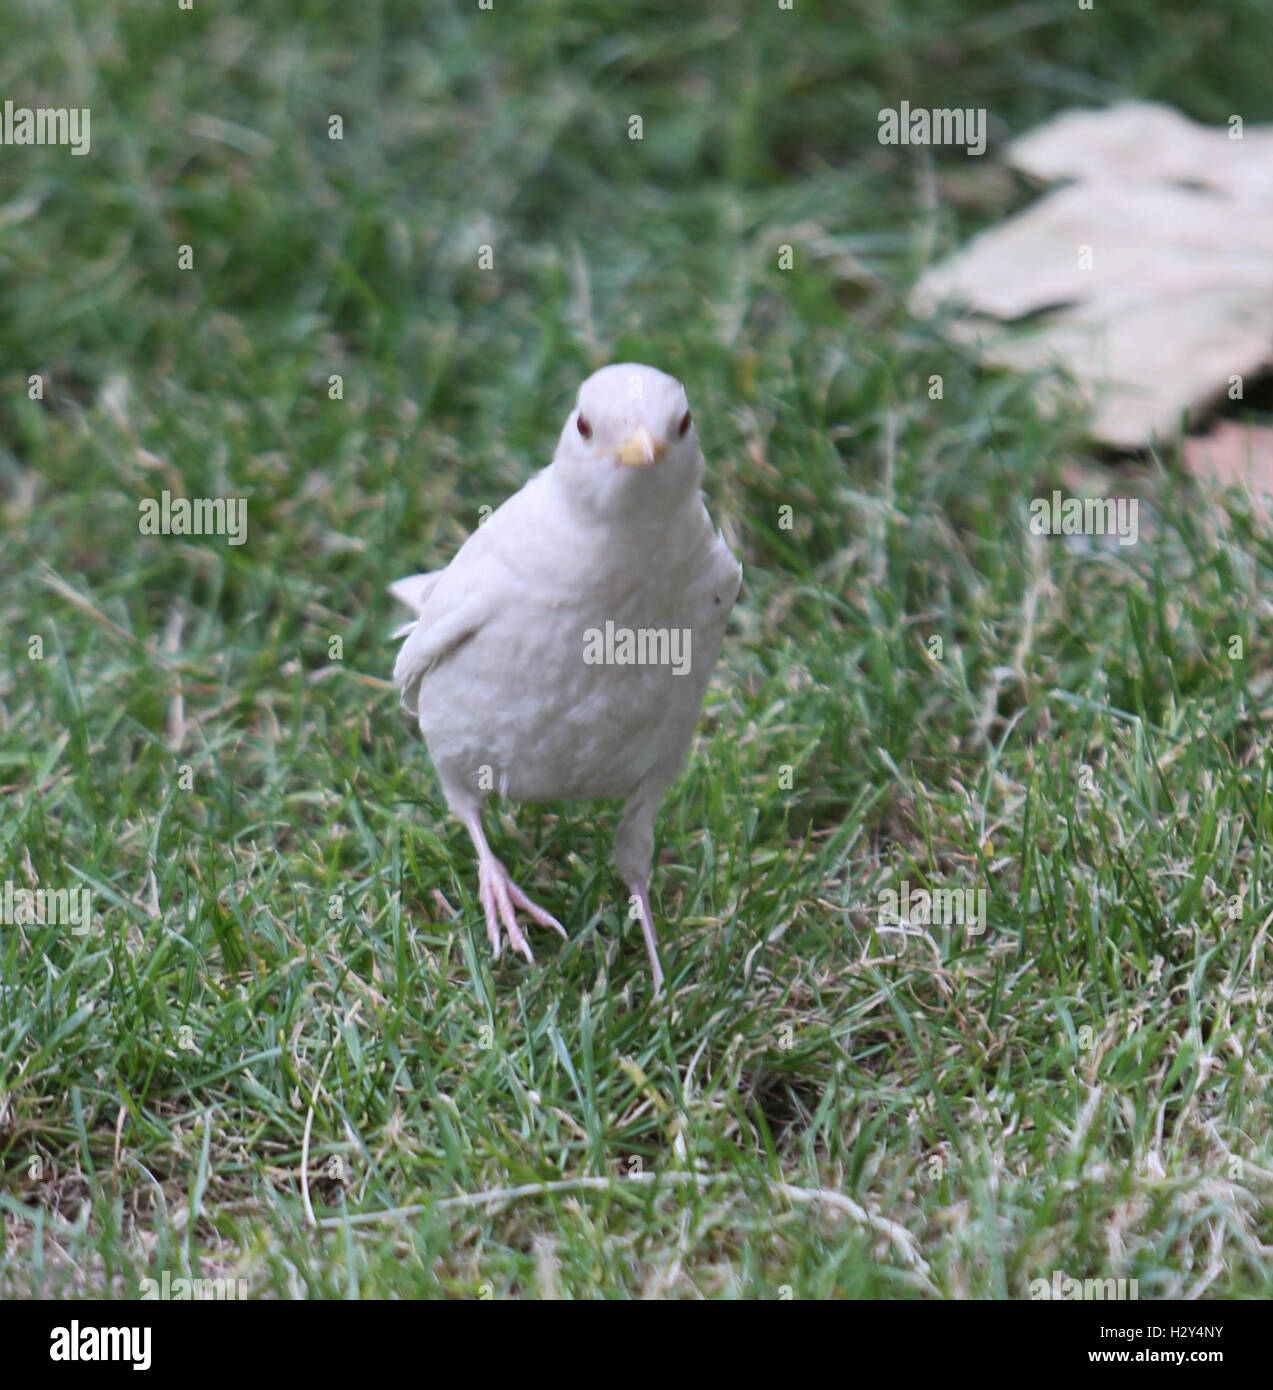 Un fotografo di Londra ha catturato su telecamera estremamente raro avvistamento di un albino blackbird su London Southbank. L'albinismo descrive gli uccelli in cui alcuni o tutti i normali pigmentazione è mancante. Essa è più spesso ereditato ma può essere causato da oth Foto Stock